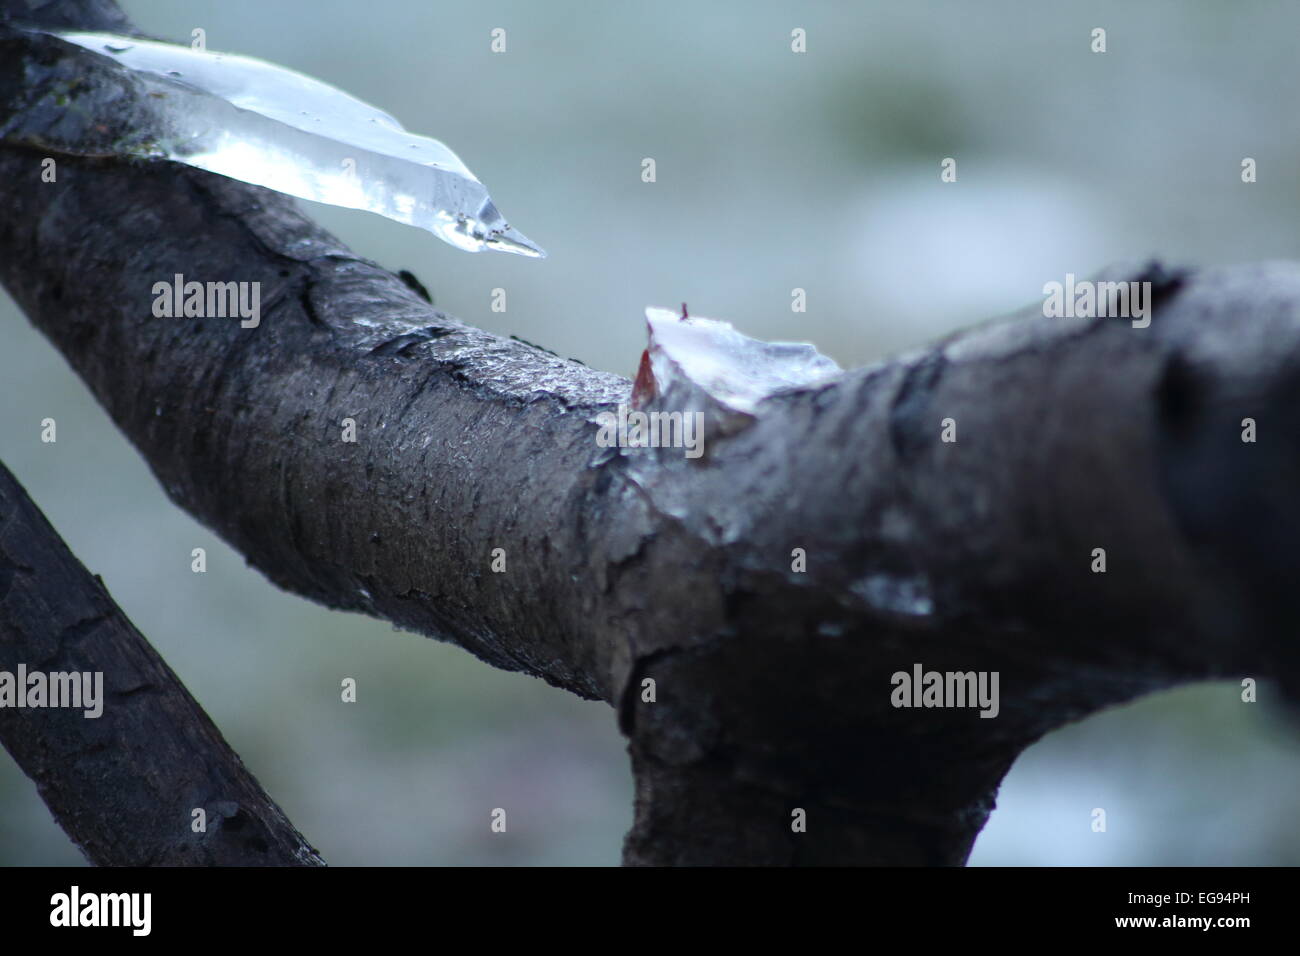 Una fotografia di ghiaccio formato su di un ramo di albero e prese utilizzando un 300mm obiettivo macro. Foto Stock